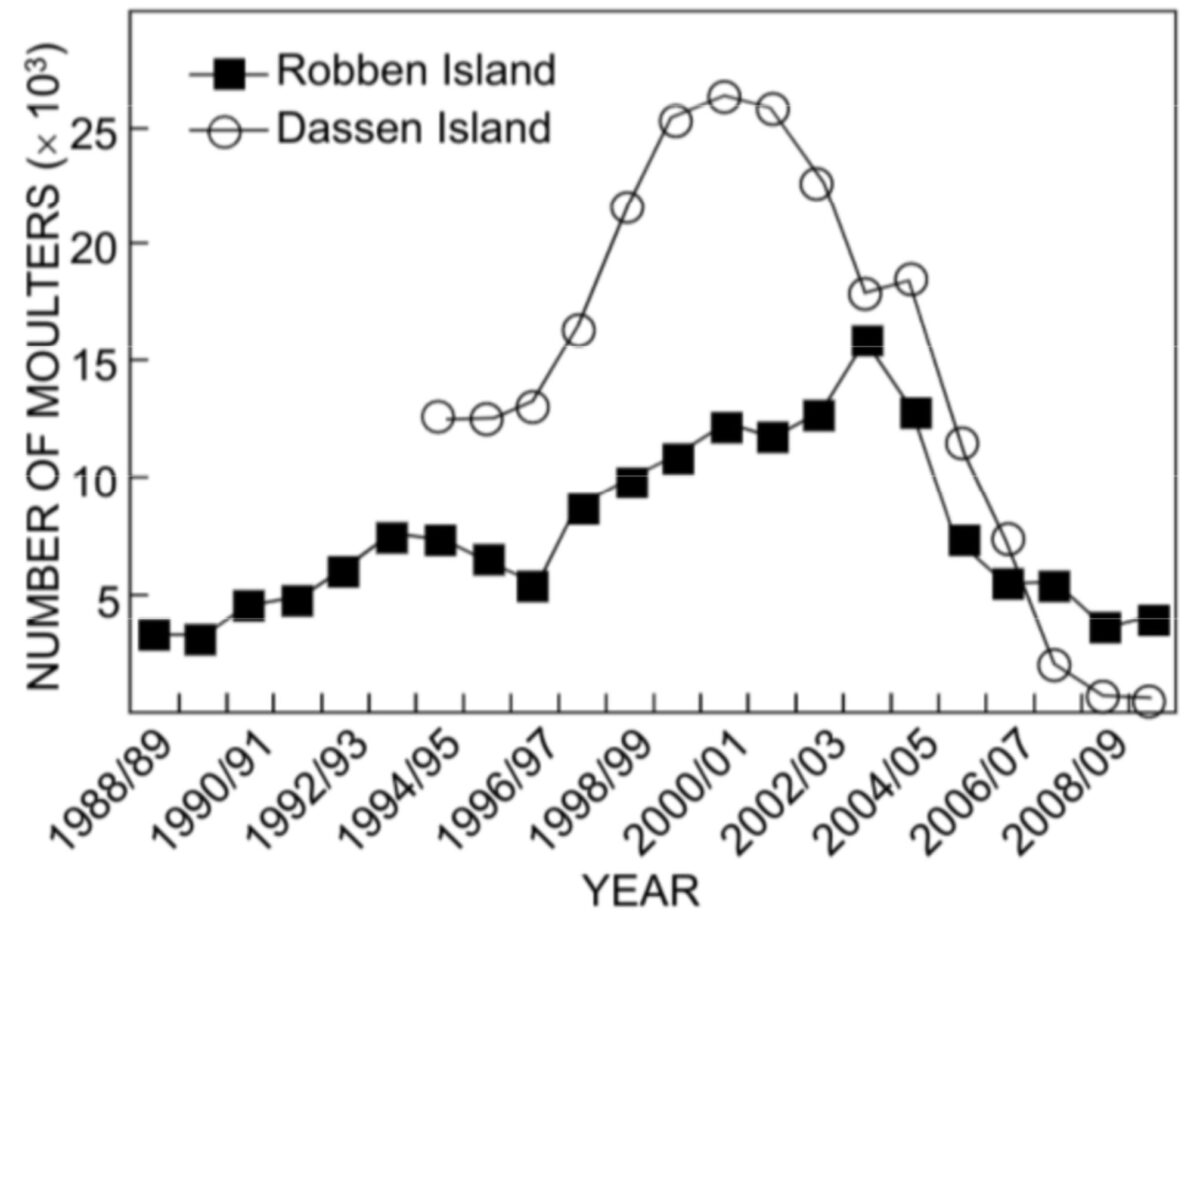 Tendances de l'estimation du nombre de manchots africains adultes muant autour des côtes des îles Dassen et Robben entre 1988/89 et 2009/10. Crawford et al. (2011)